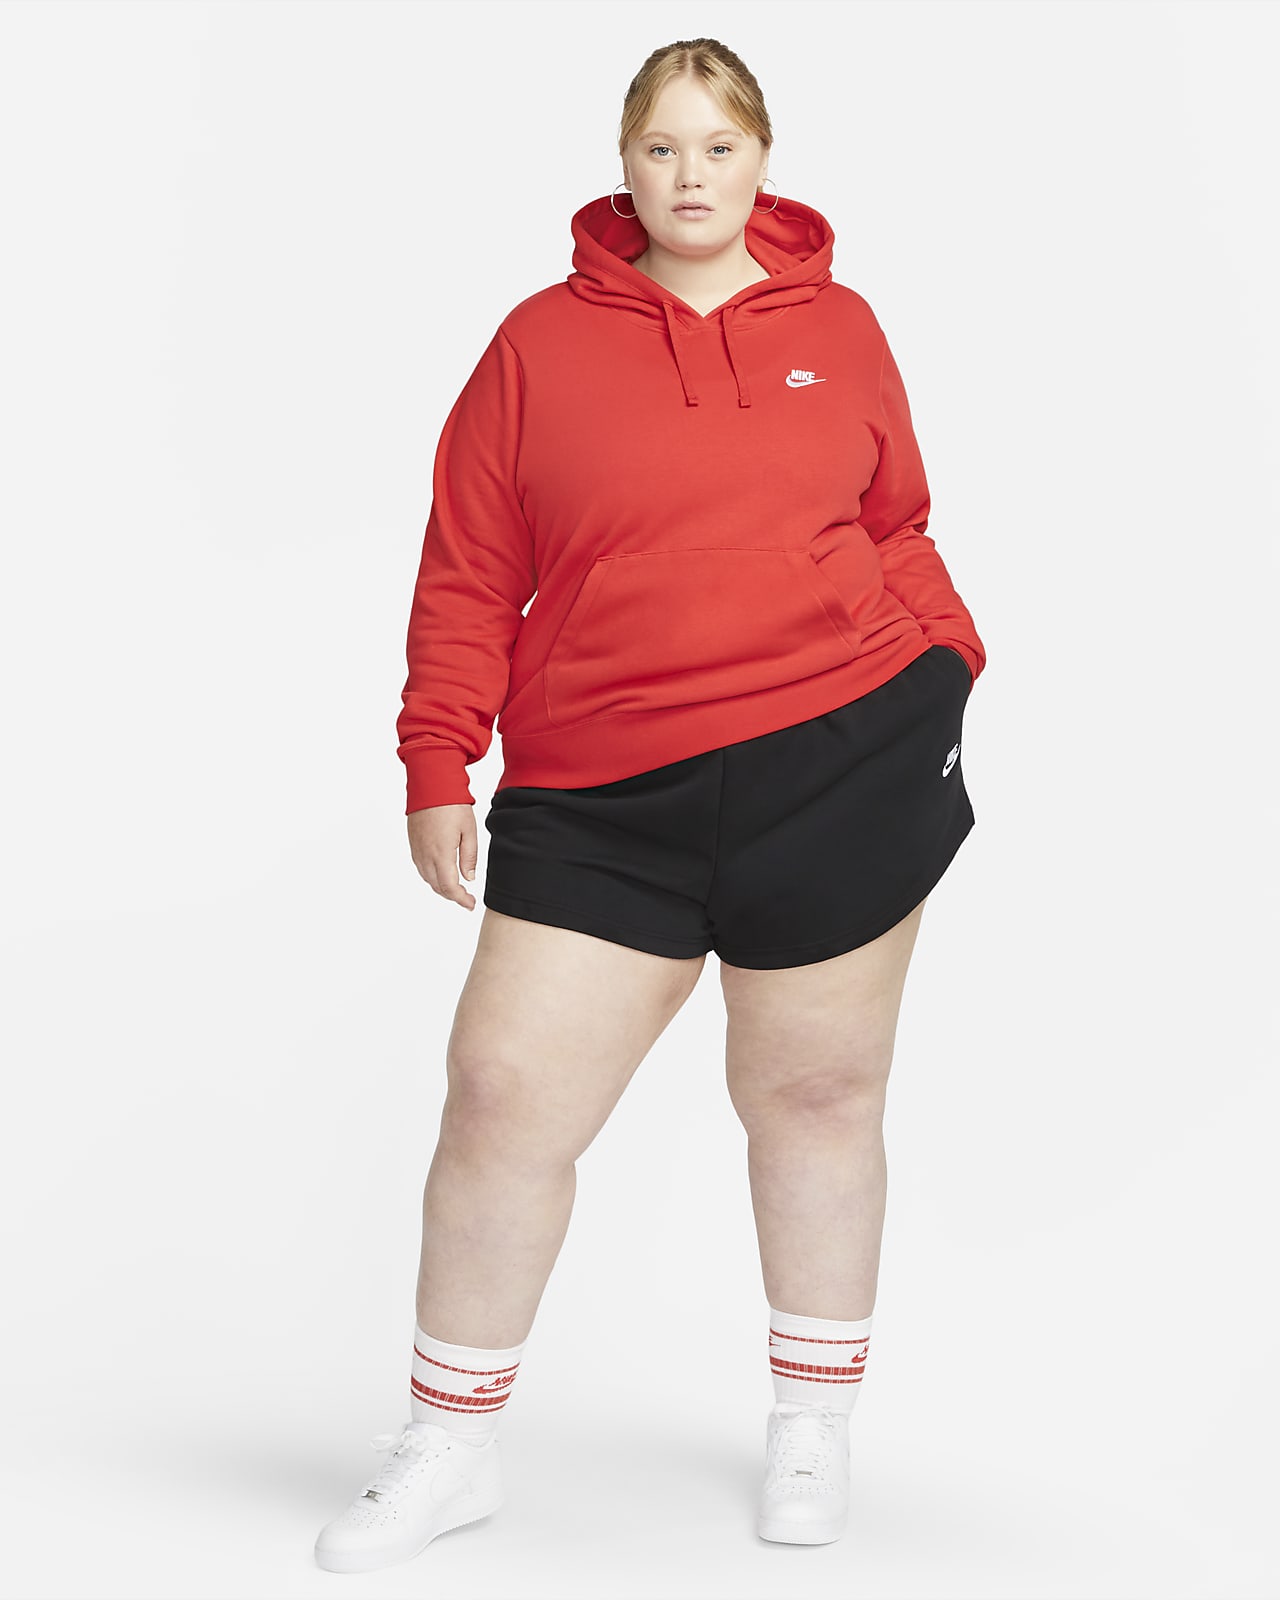 Nike Sportswear Women's Shorts (Plus Size).